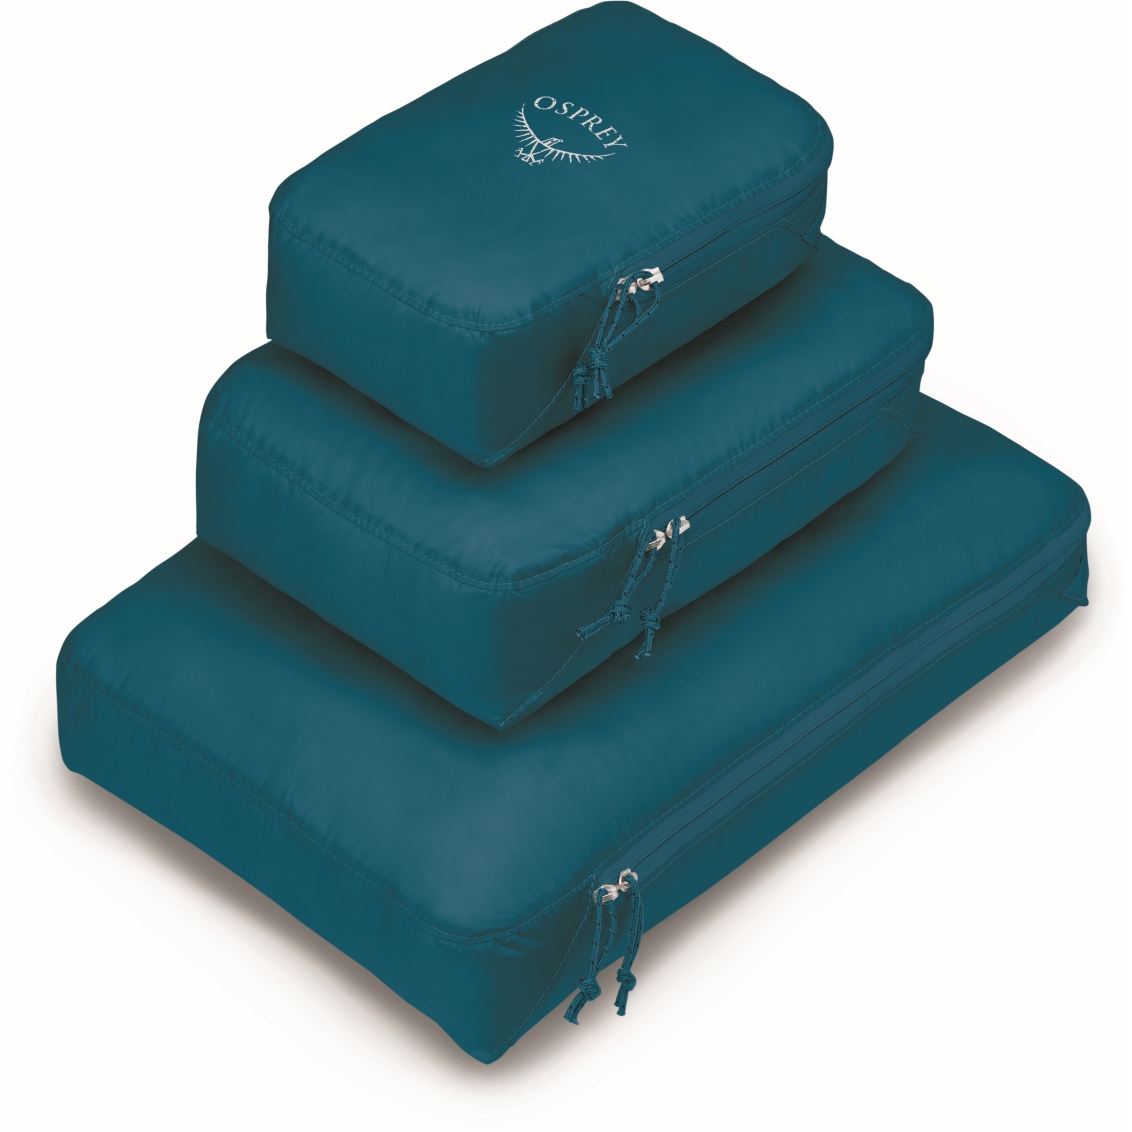 Produktbild von Osprey Ultralight Packing Cube Set S/M/L - Packtasche - Waterfront Blue